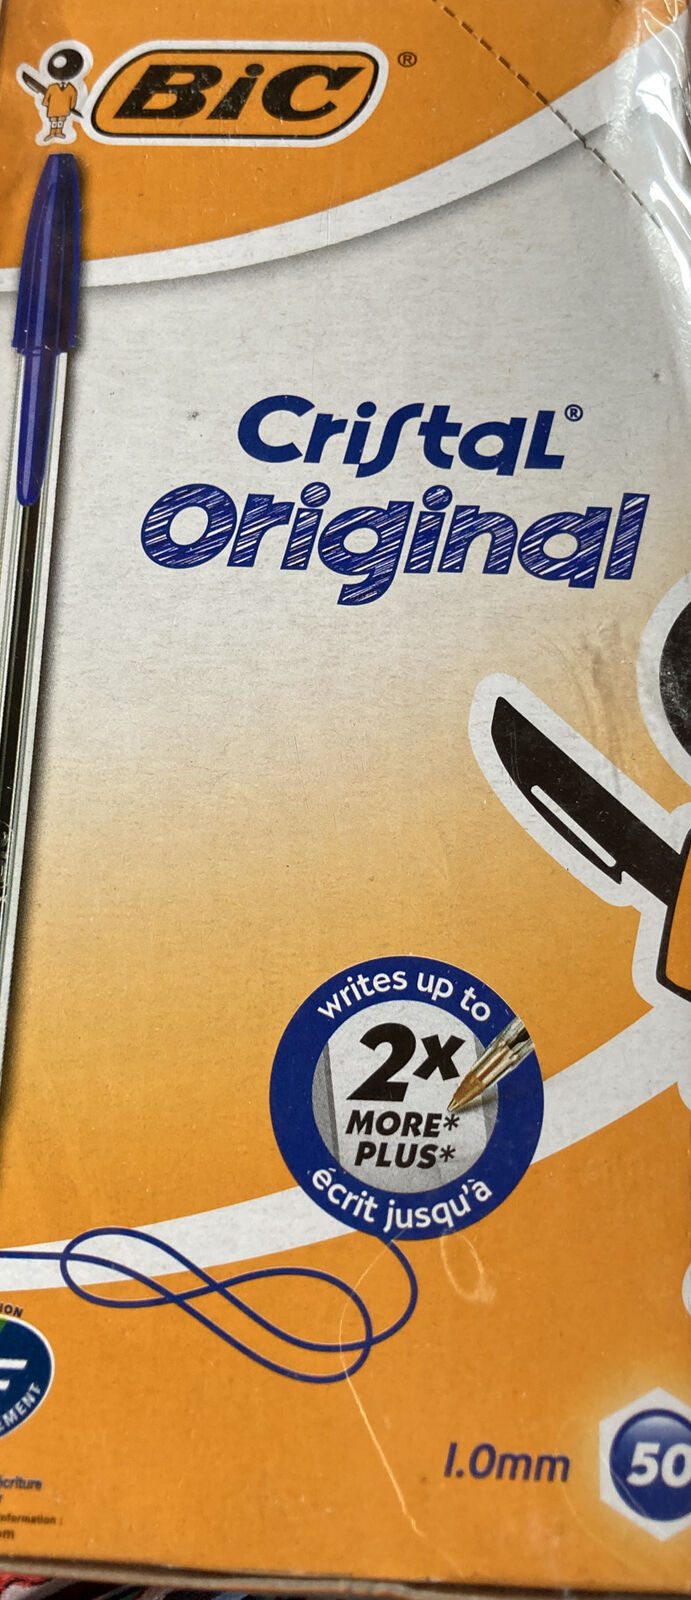 Moreel onderwijs Opschudding Gespecificeerd BiC Cristal Original 1.0 mm Ball Pen Pack of 50 | eBay